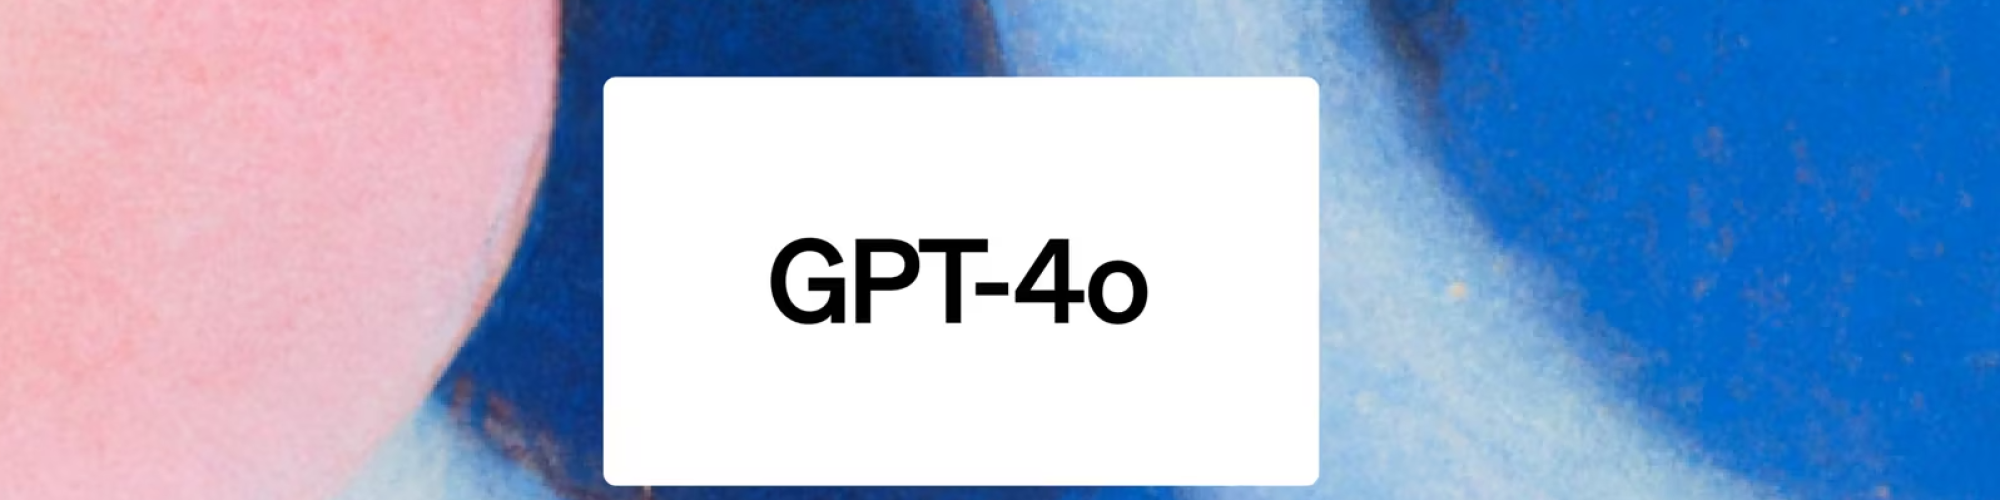 GPT-4o منتشر شد